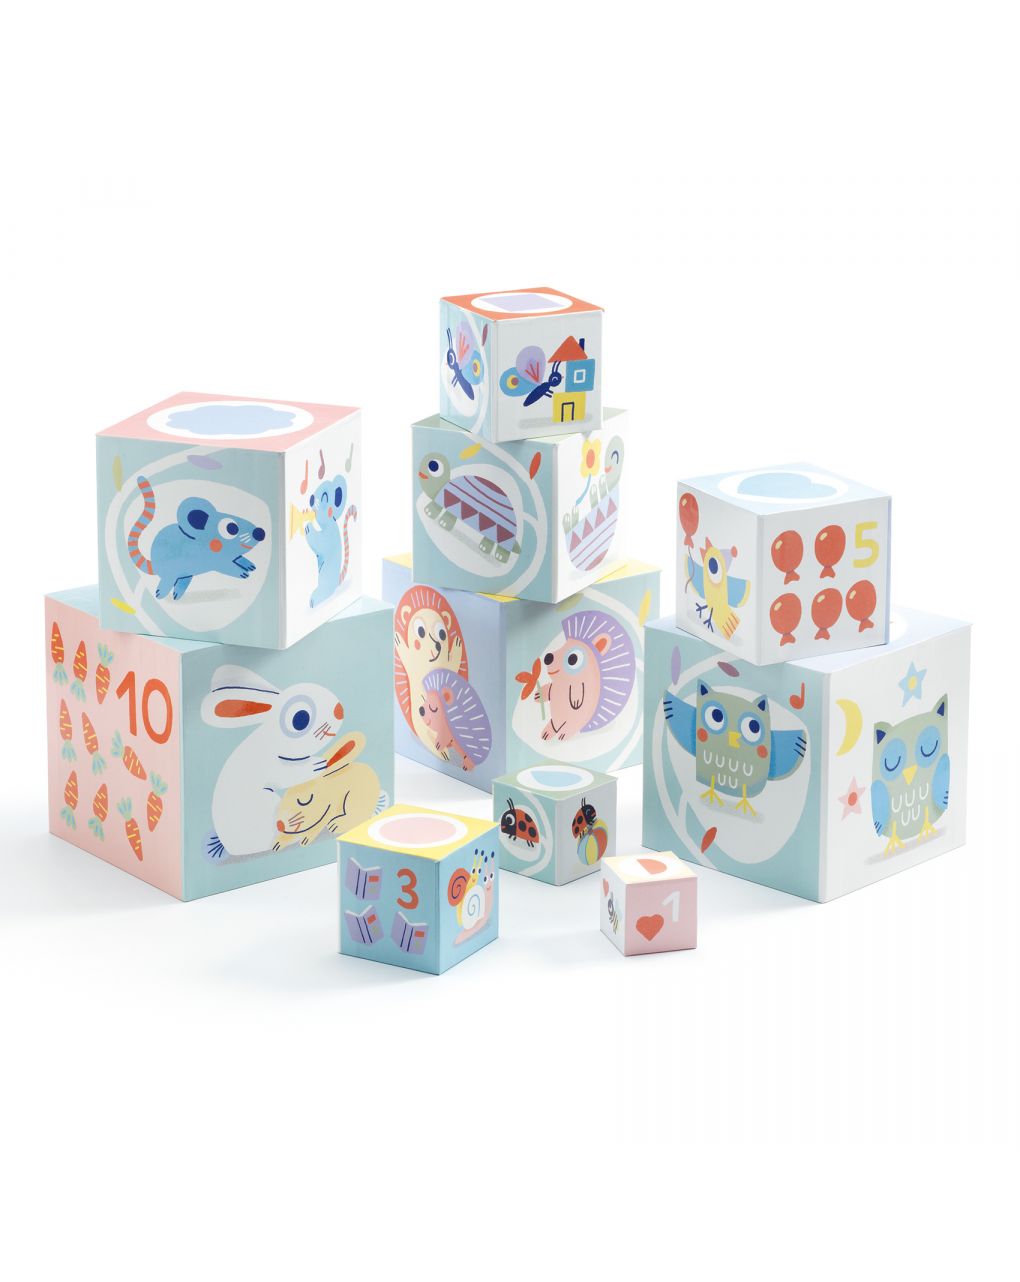 Babybloki 10 cubi sovrapponibili in cartone - djeco - Djeco